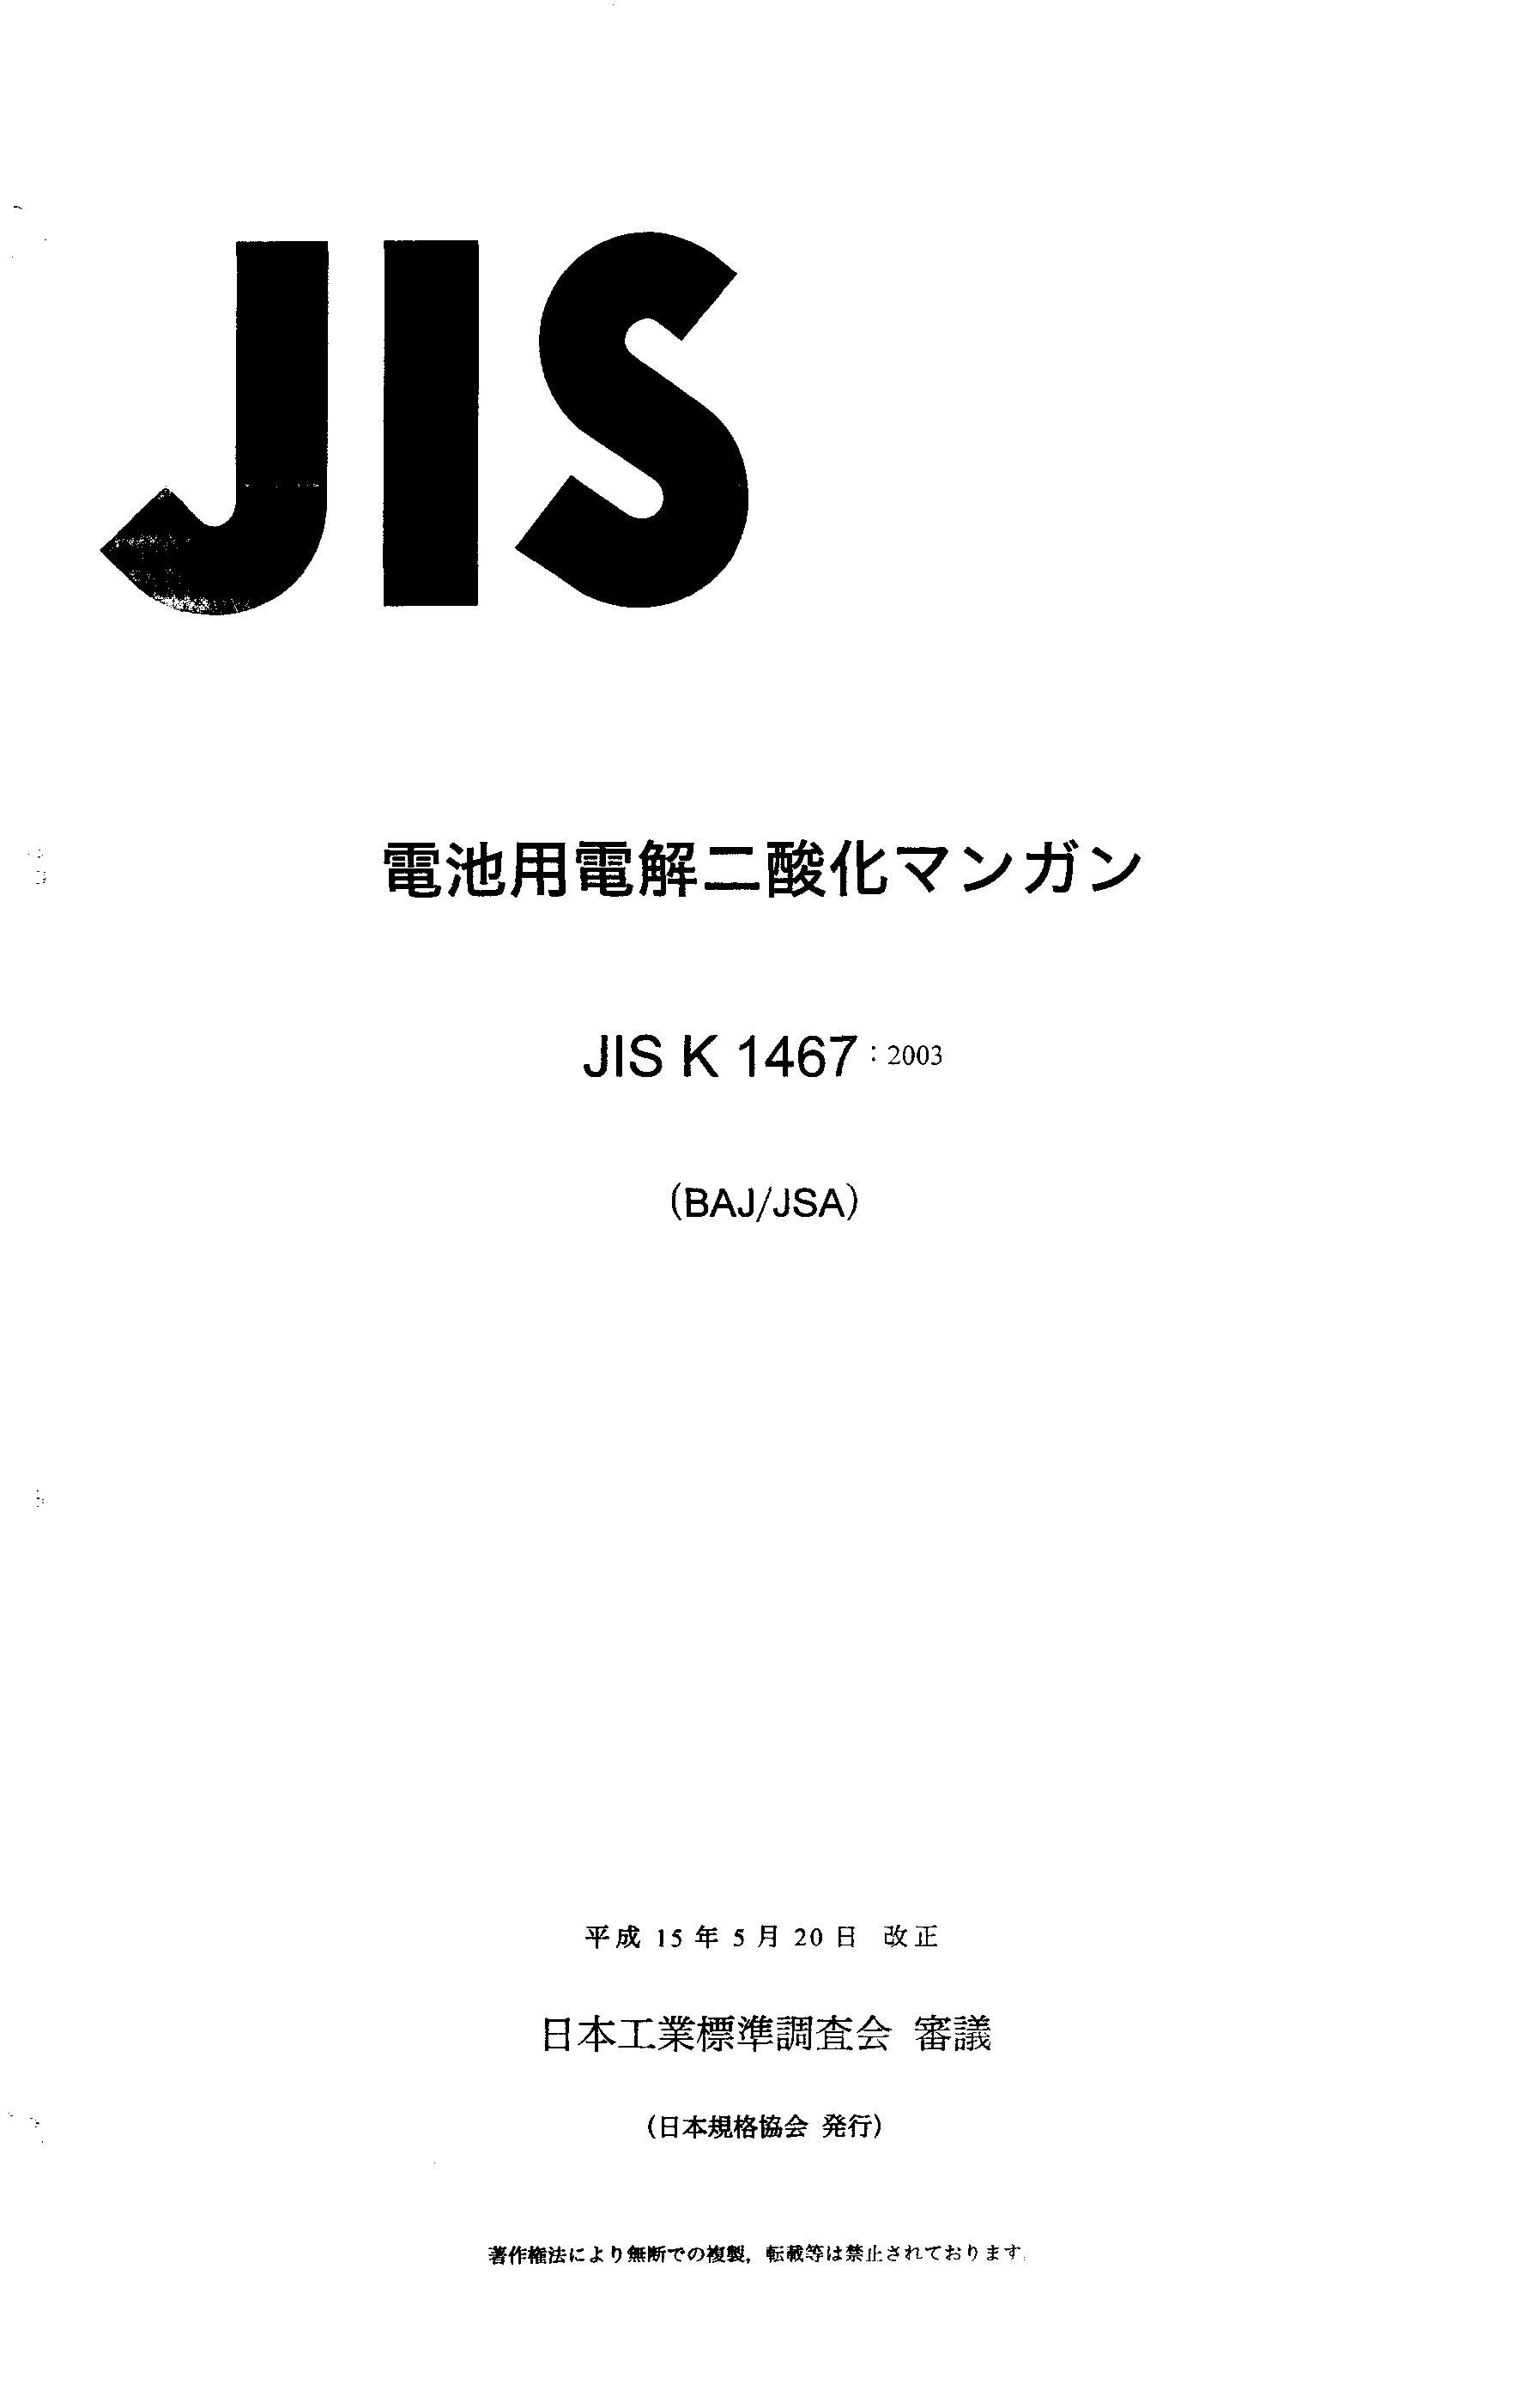 JIS K 1467:2003封面图